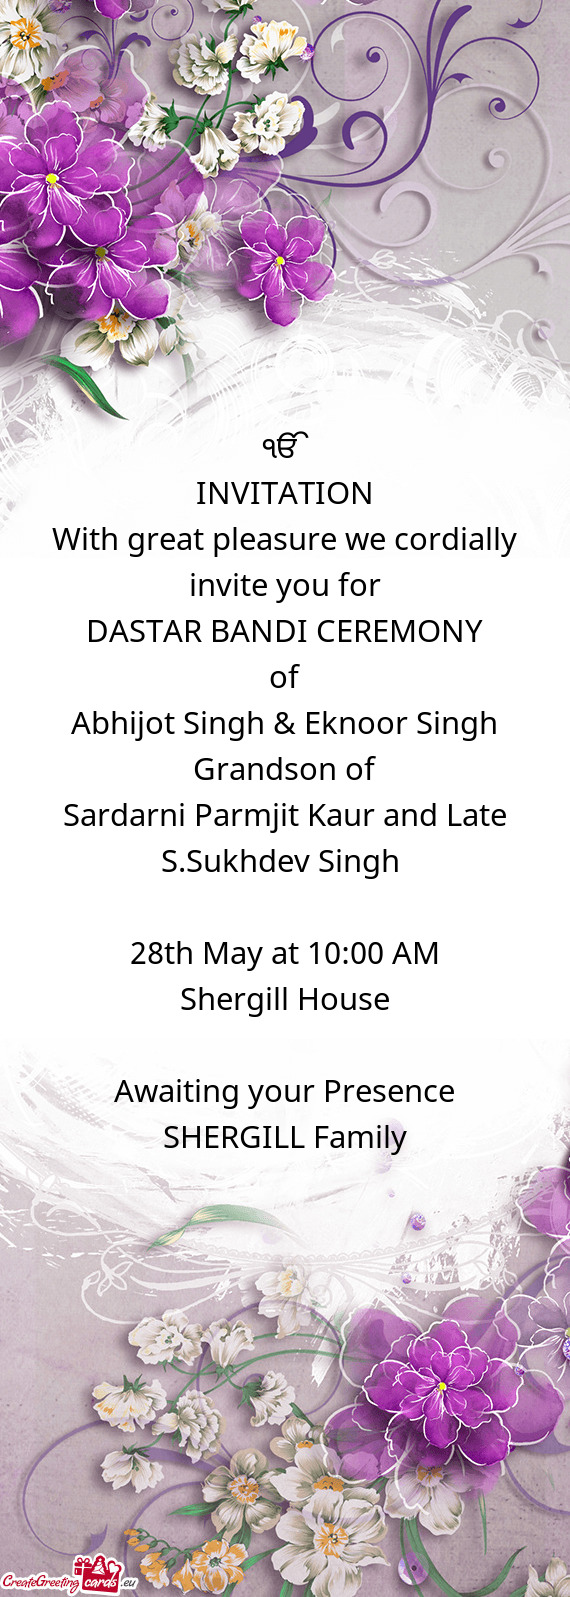 Abhijot Singh & Eknoor Singh